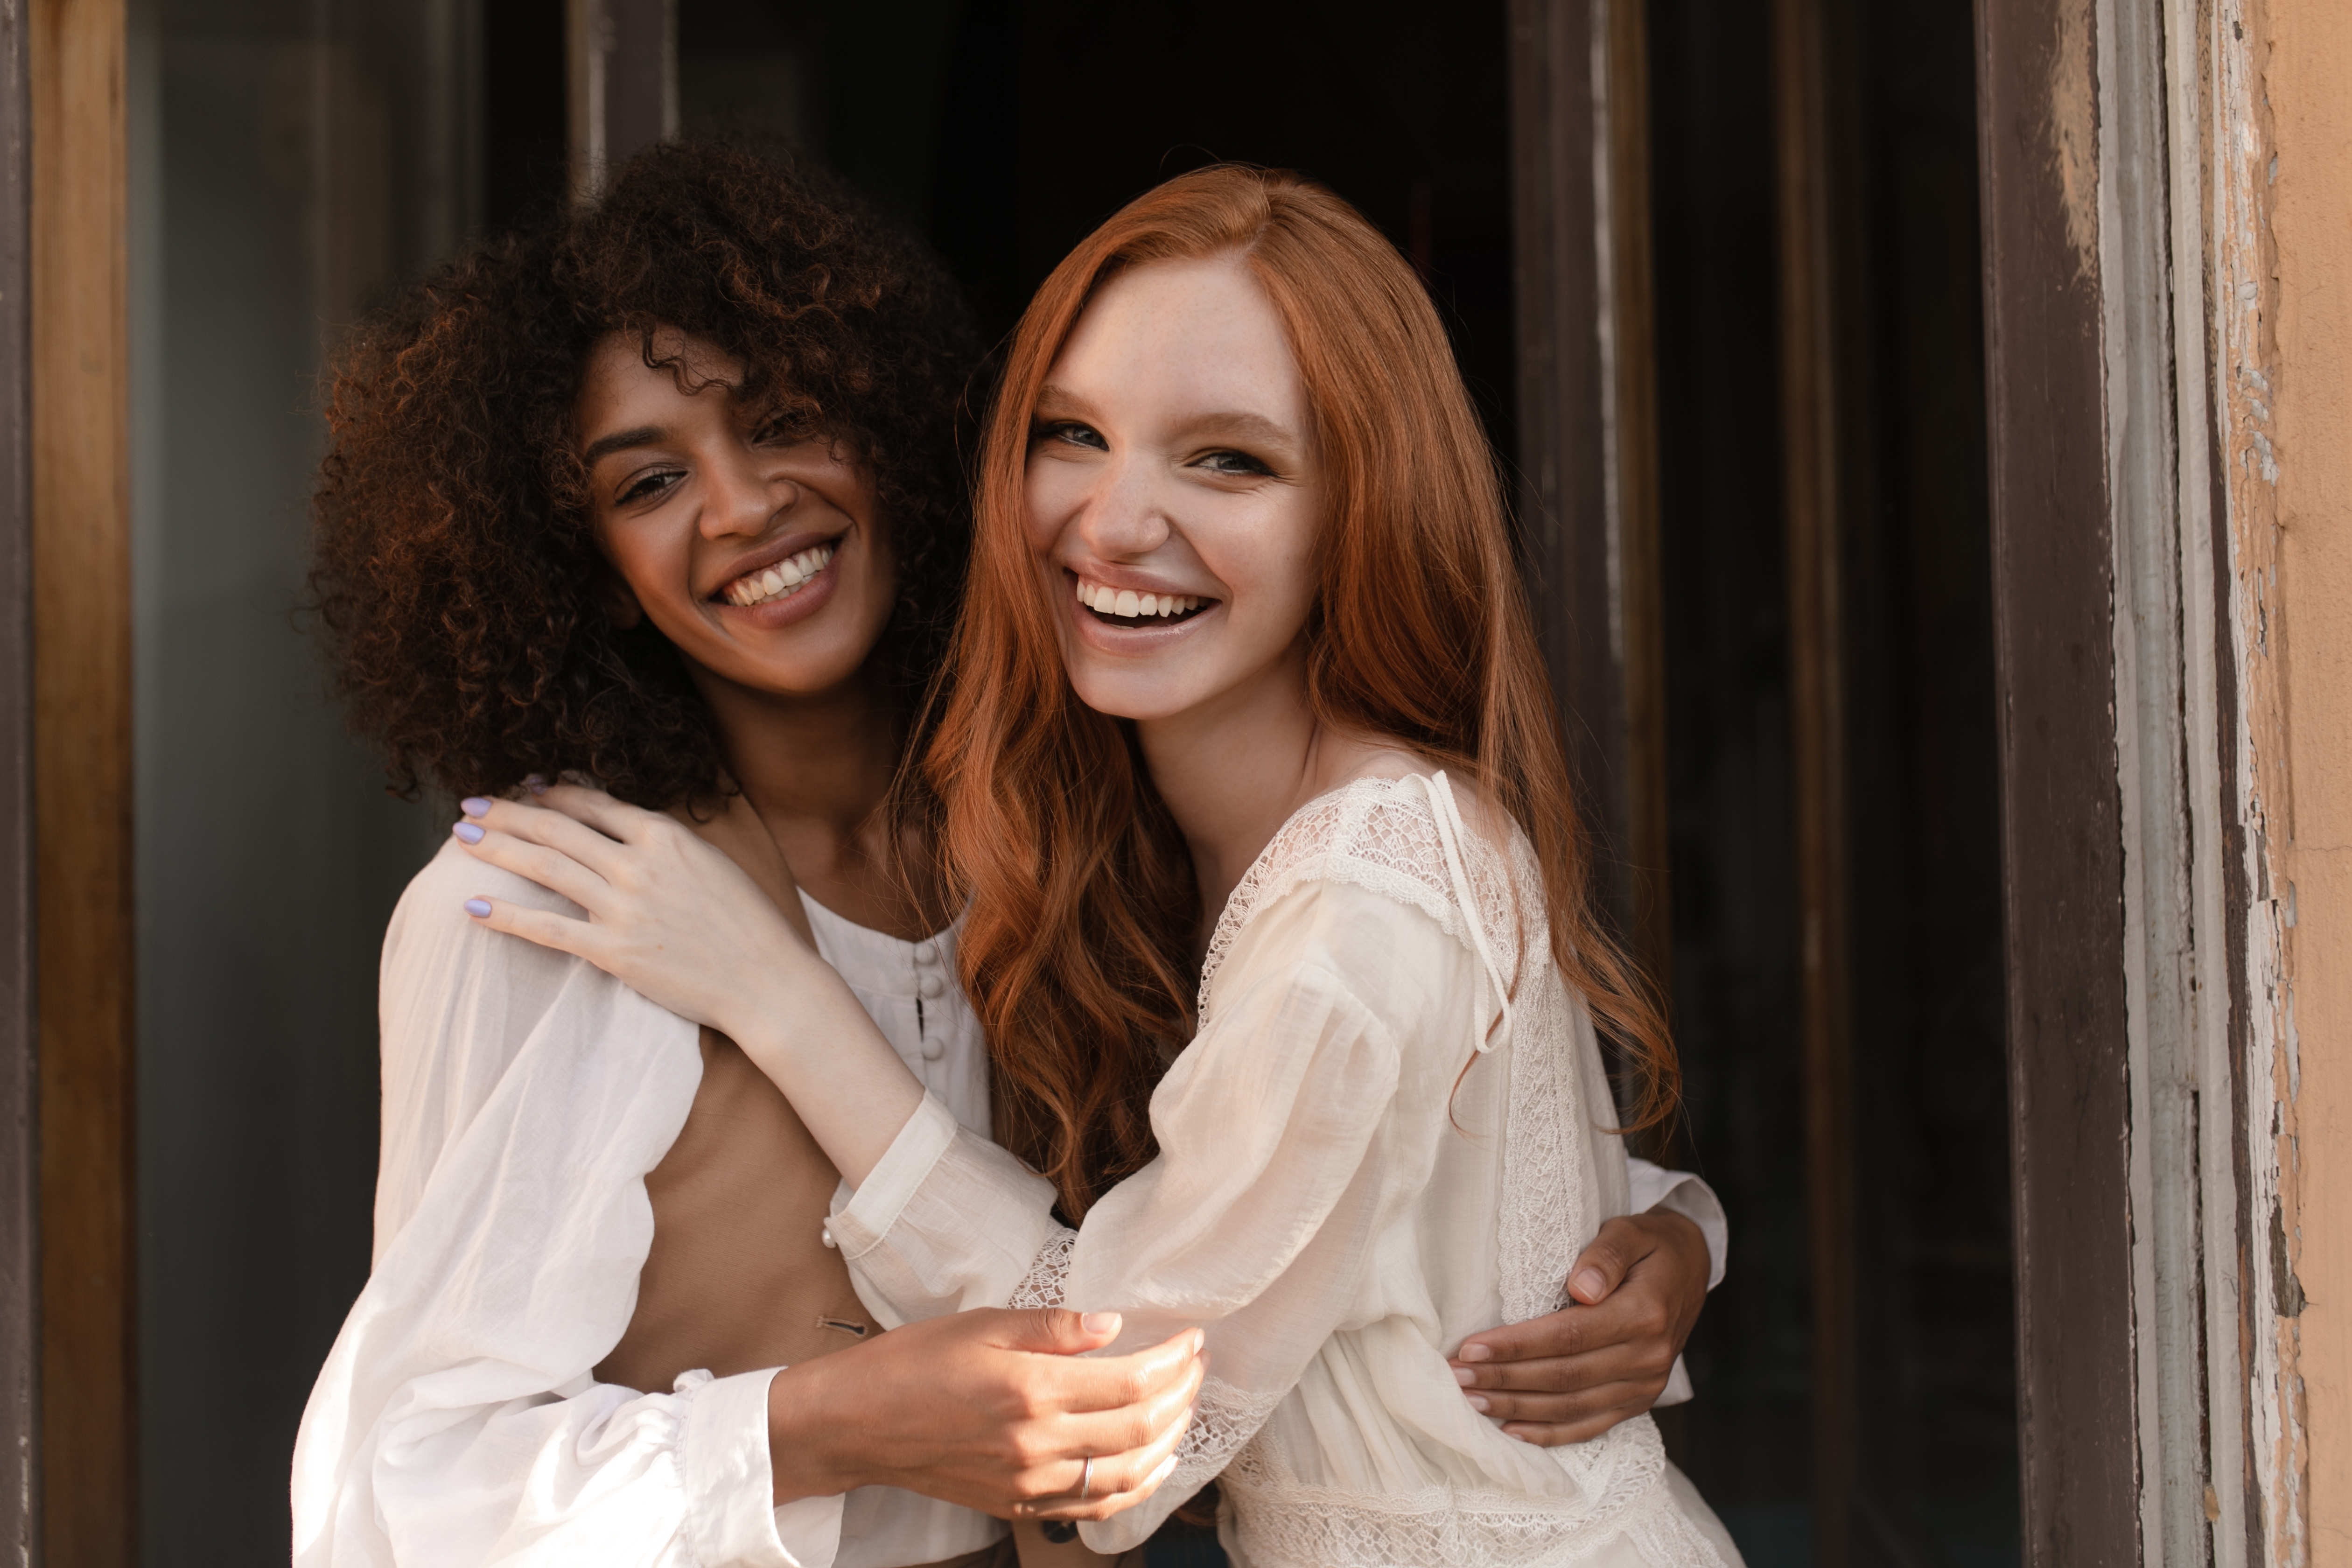 Zwei glückliche Frauen, die zusammen stehen | Quelle: Shutterstock